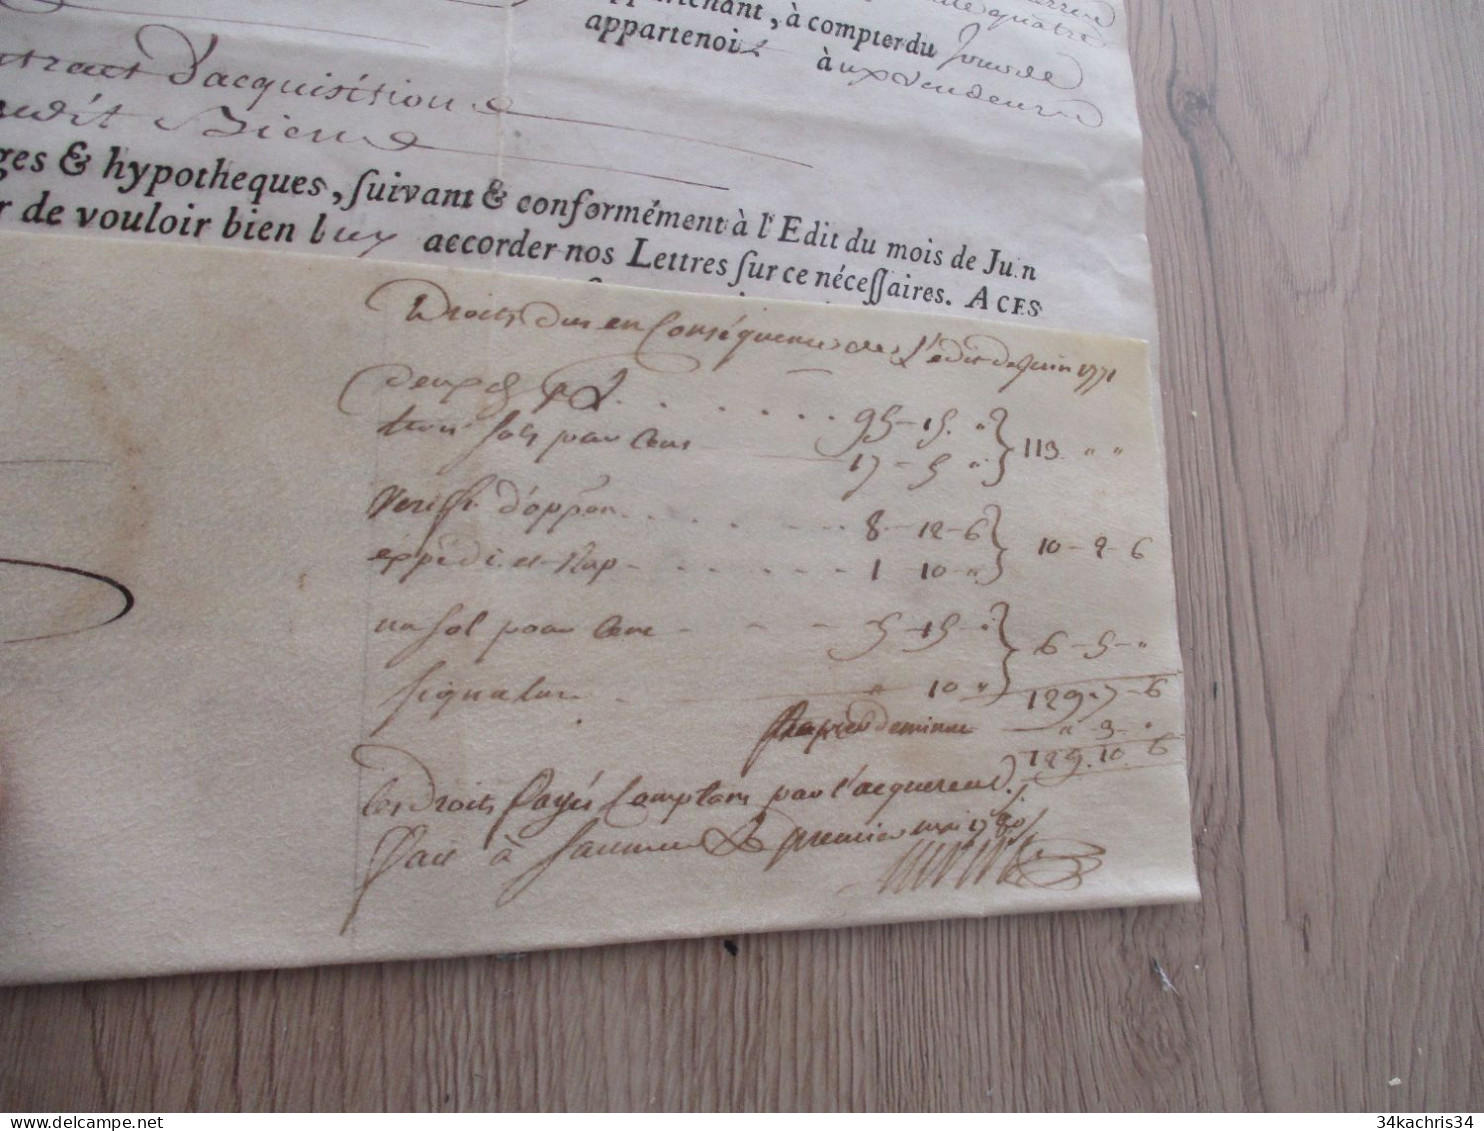 X2 Pièce signée velin avec sceaux LAMOTHE BARACE colonel baron  1780 lettres ratification Loudun Tours Biens ....